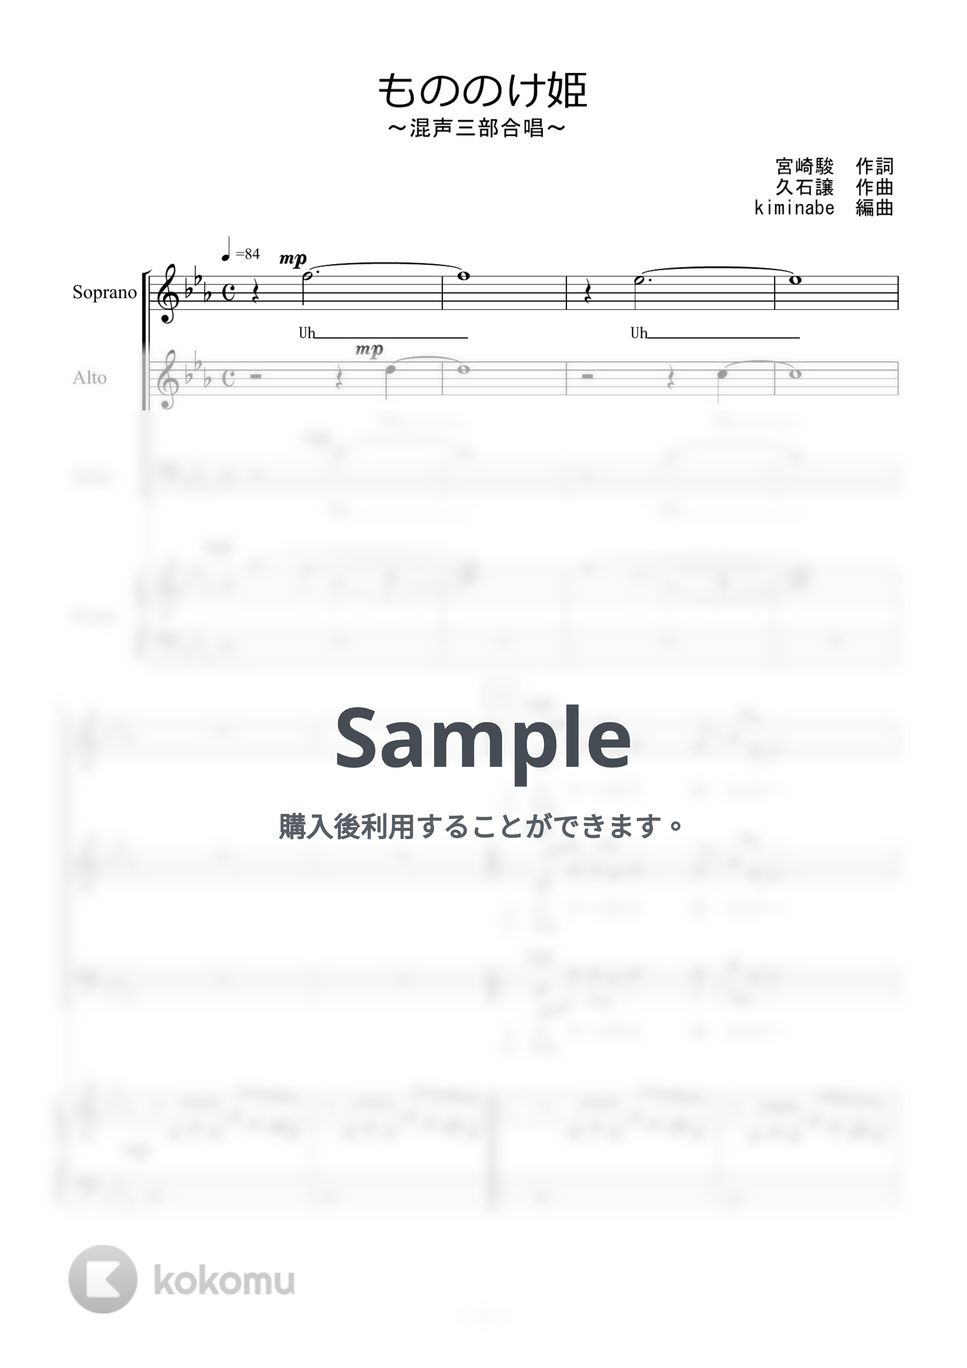 久石譲 - もののけ姫 (混声三部合唱) by kiminabe